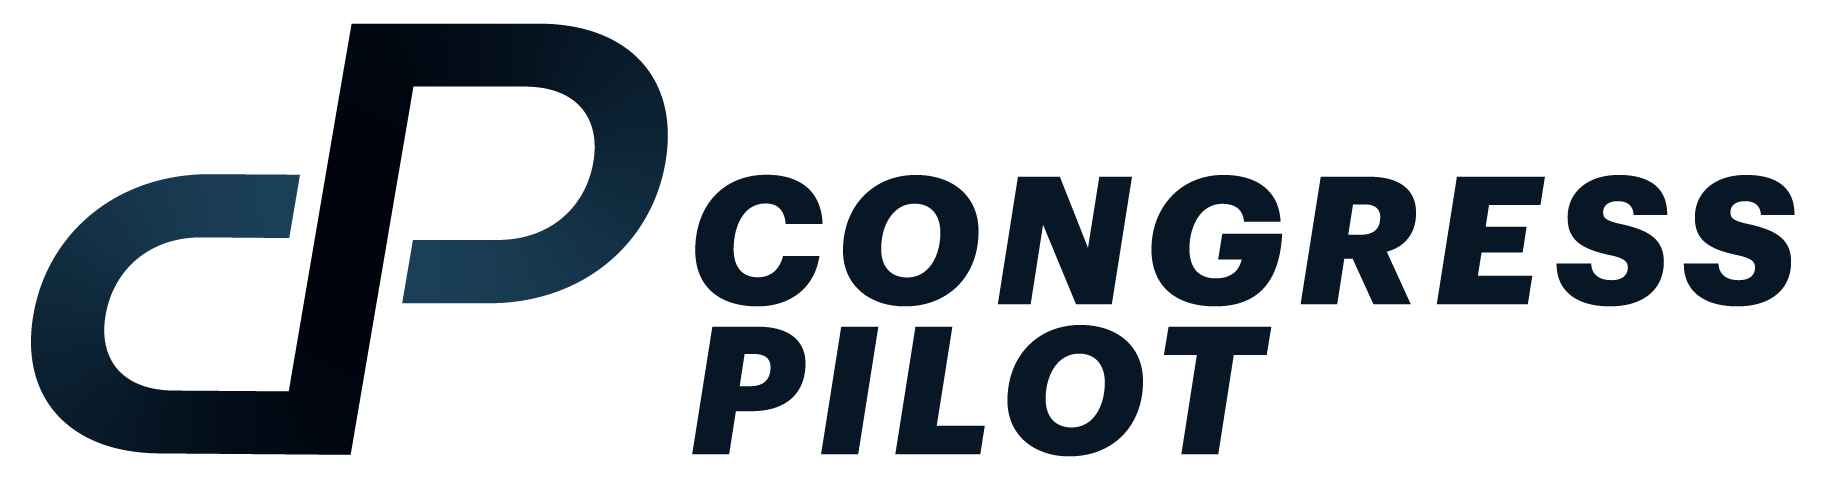 Congress Pilot